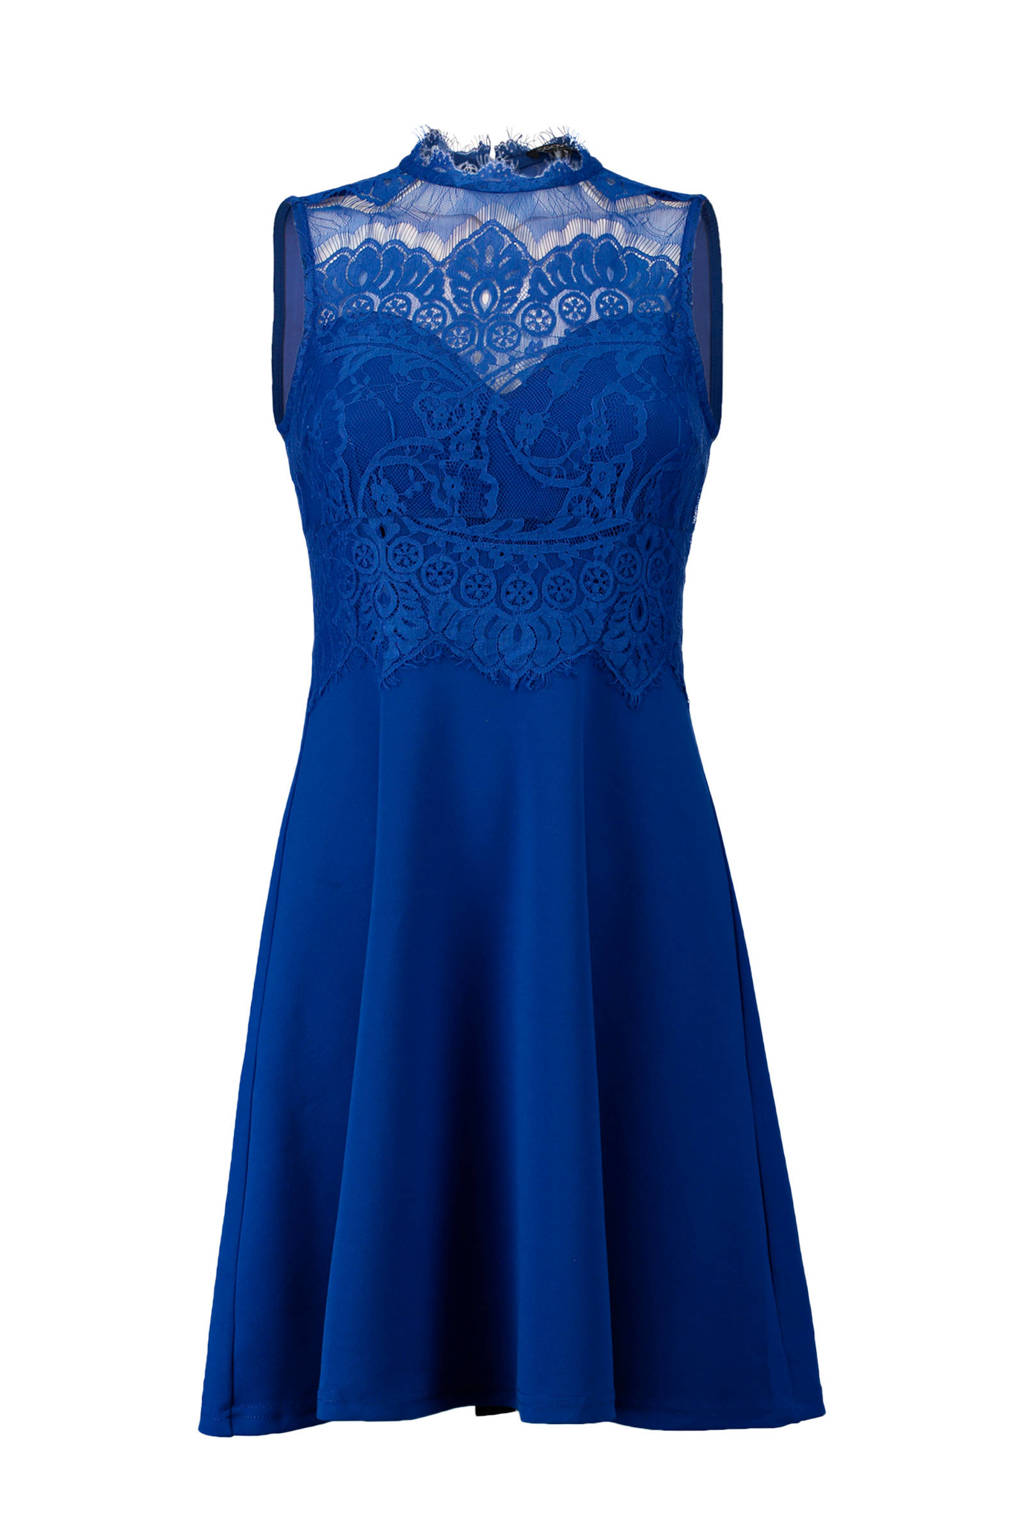 Wonderbaarlijk CoolCat jurk met kant blauw | wehkamp VT-12